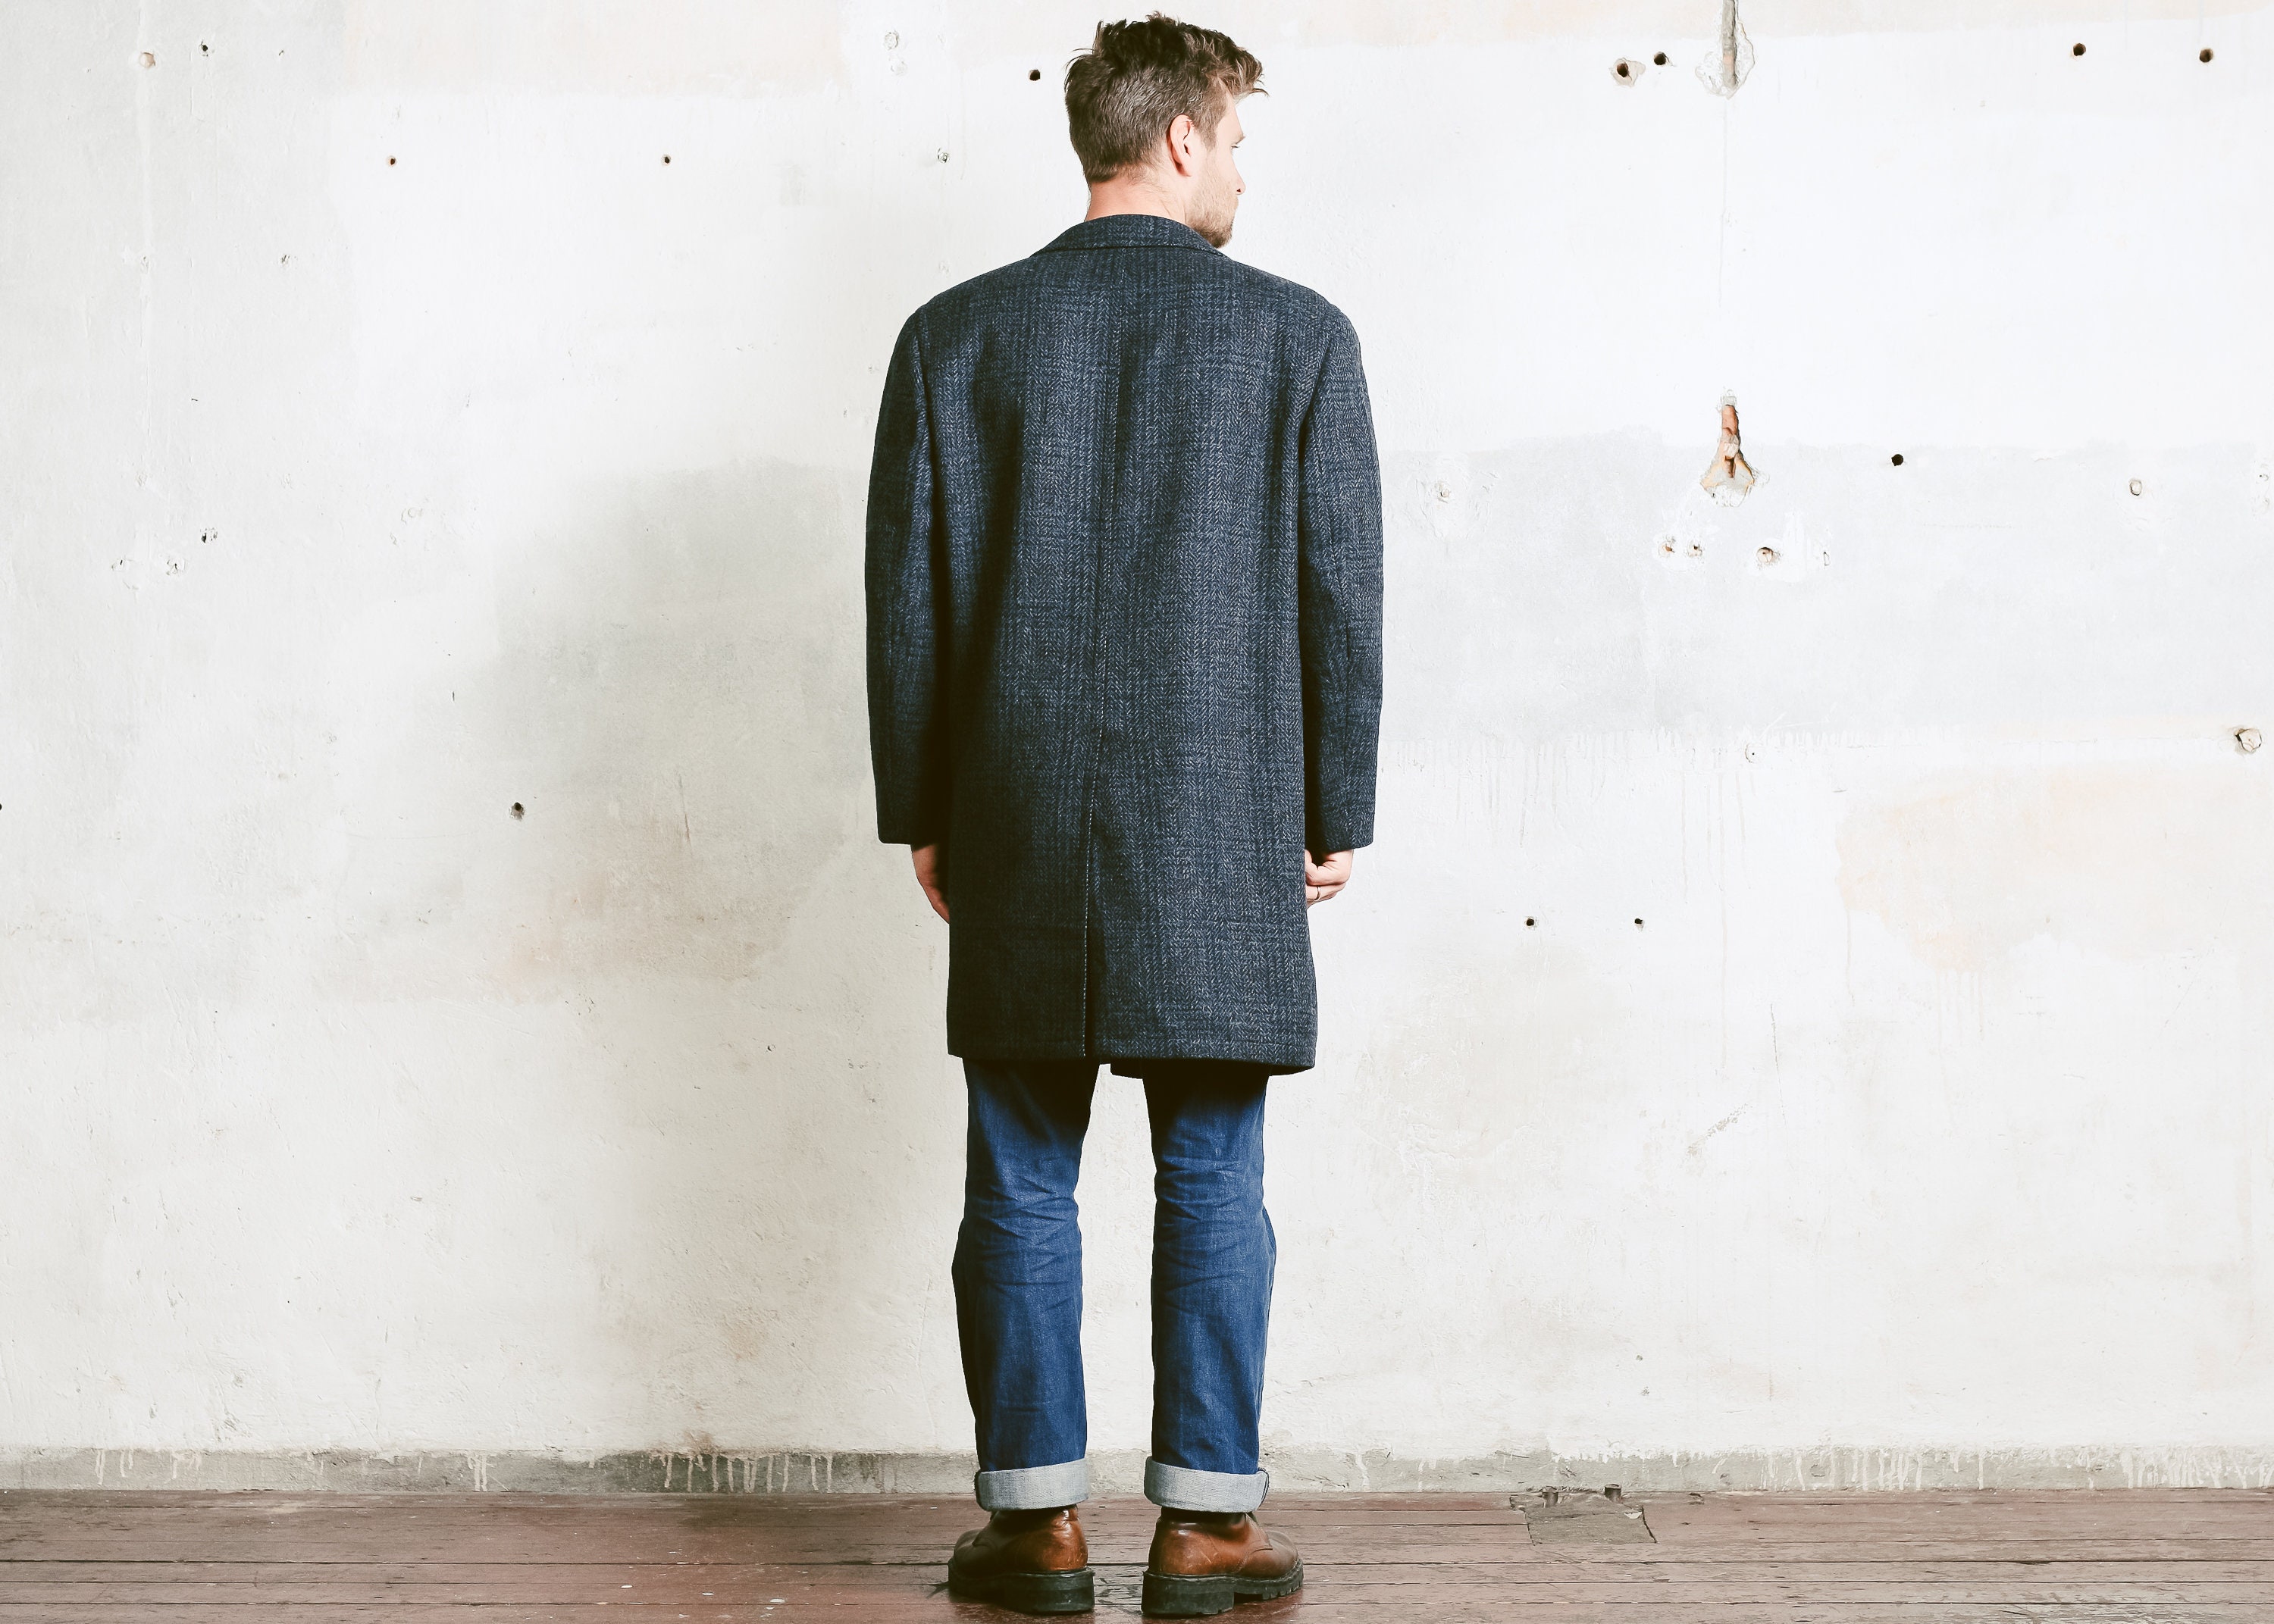 Men PEEK CLOPPENBURG Winter Coat . Vintage 90s Wool Overcoat Blue Grey ...